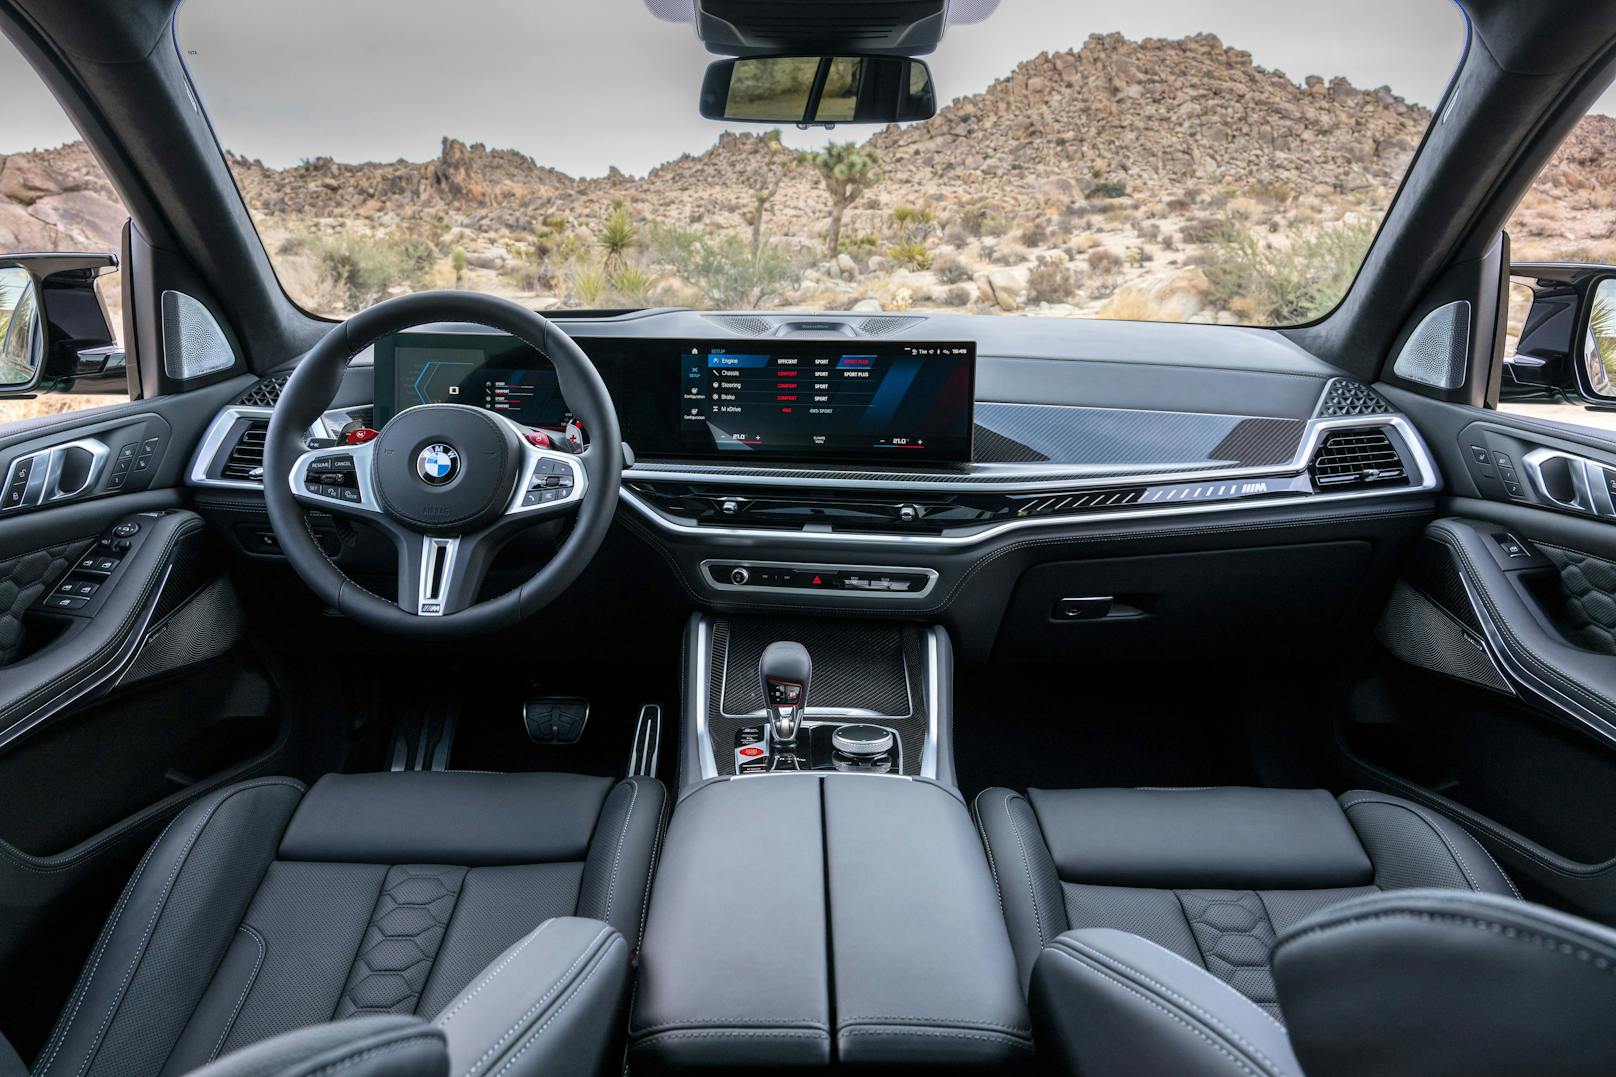 Das neue BMW Curved Display prägt das Cockpit in den neuen M-Modellen.